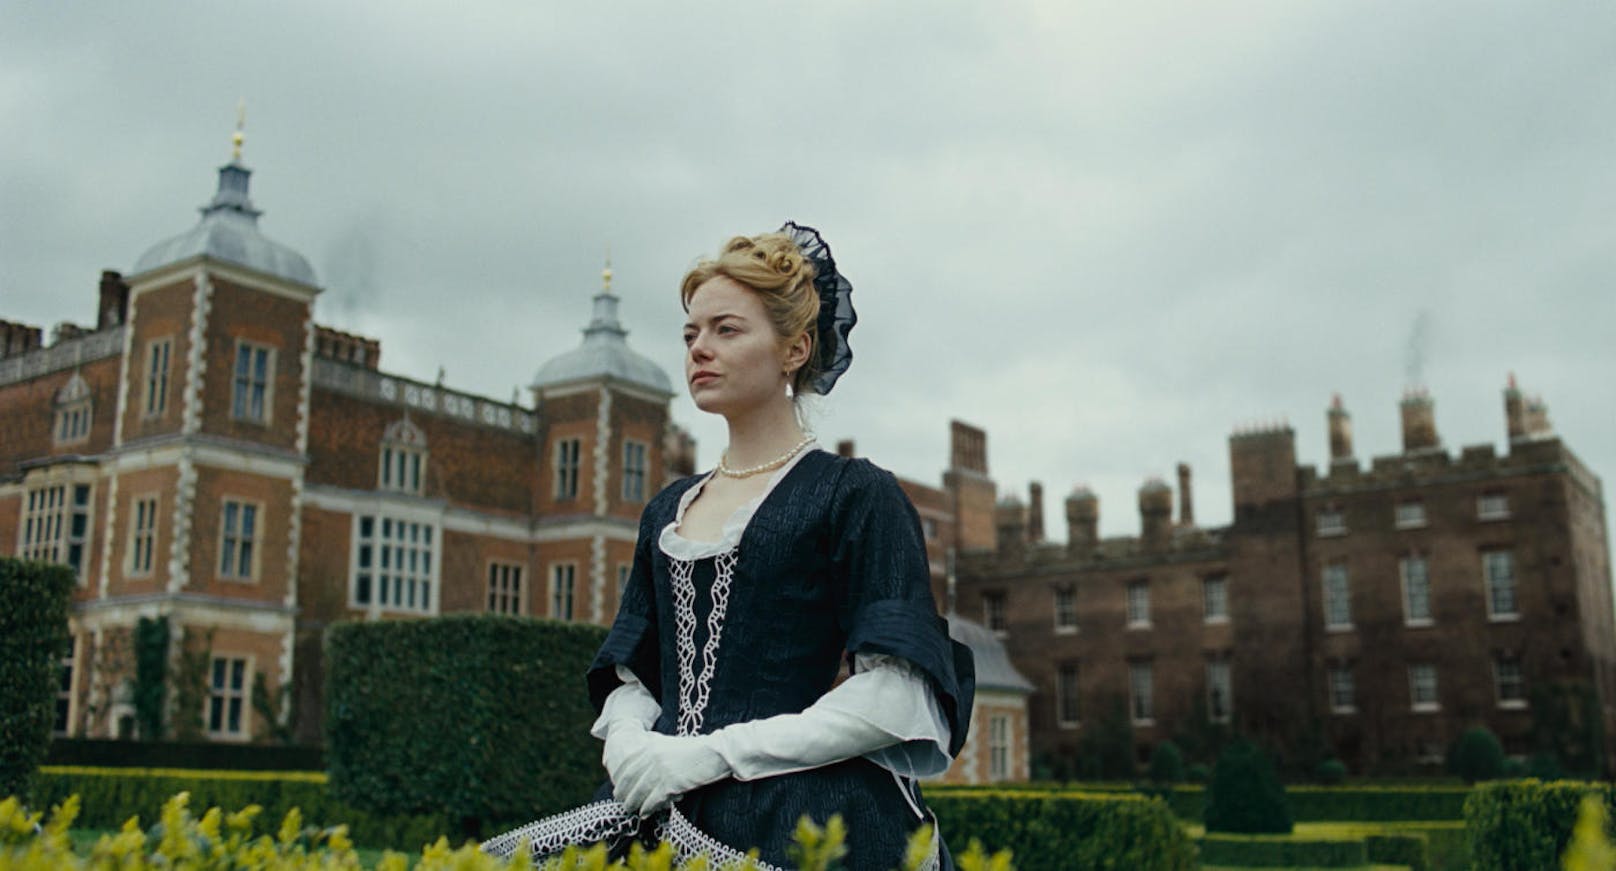 THE FAVOURITE: England im 18. Jahrhundert - Lady Sarah (Rachel Weisz) regelt die Staatsangelegenheiten für Queen Anne (Olivia Colman), als die junge Bedienstete Abigail (Emma Stone) am Hof eintrifft. 

Kinostart: 25. Jänner